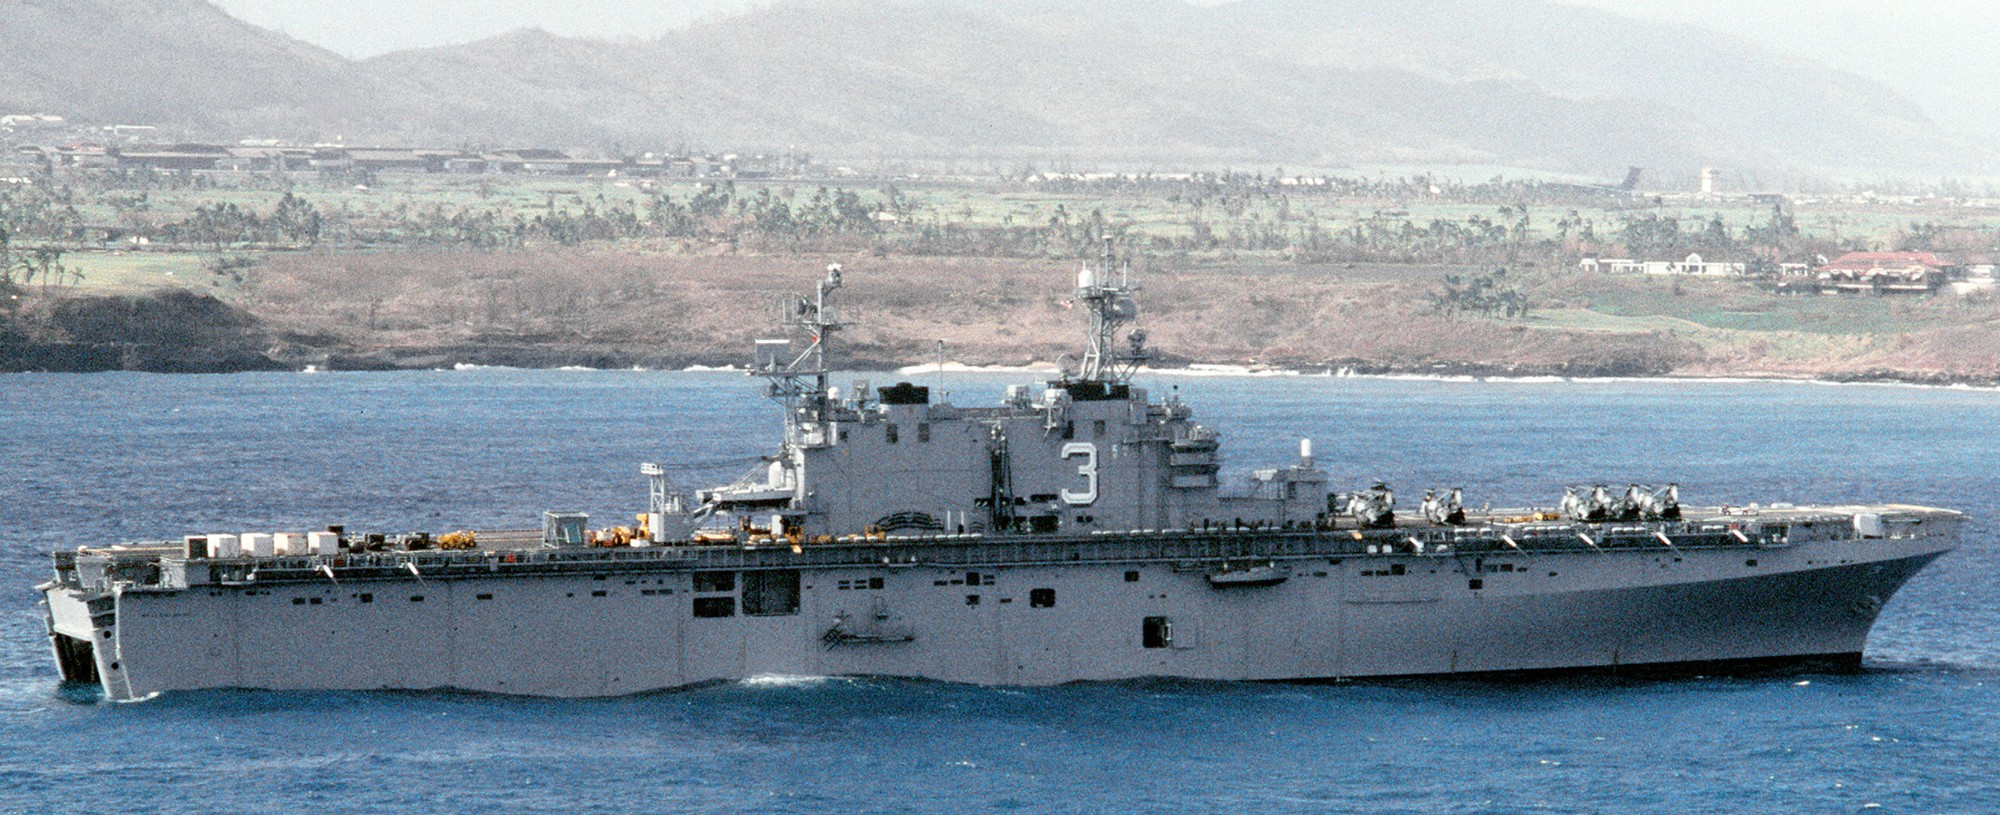 lha-3 uss belleau wood tarawa class amphibious assault ship us navy 36